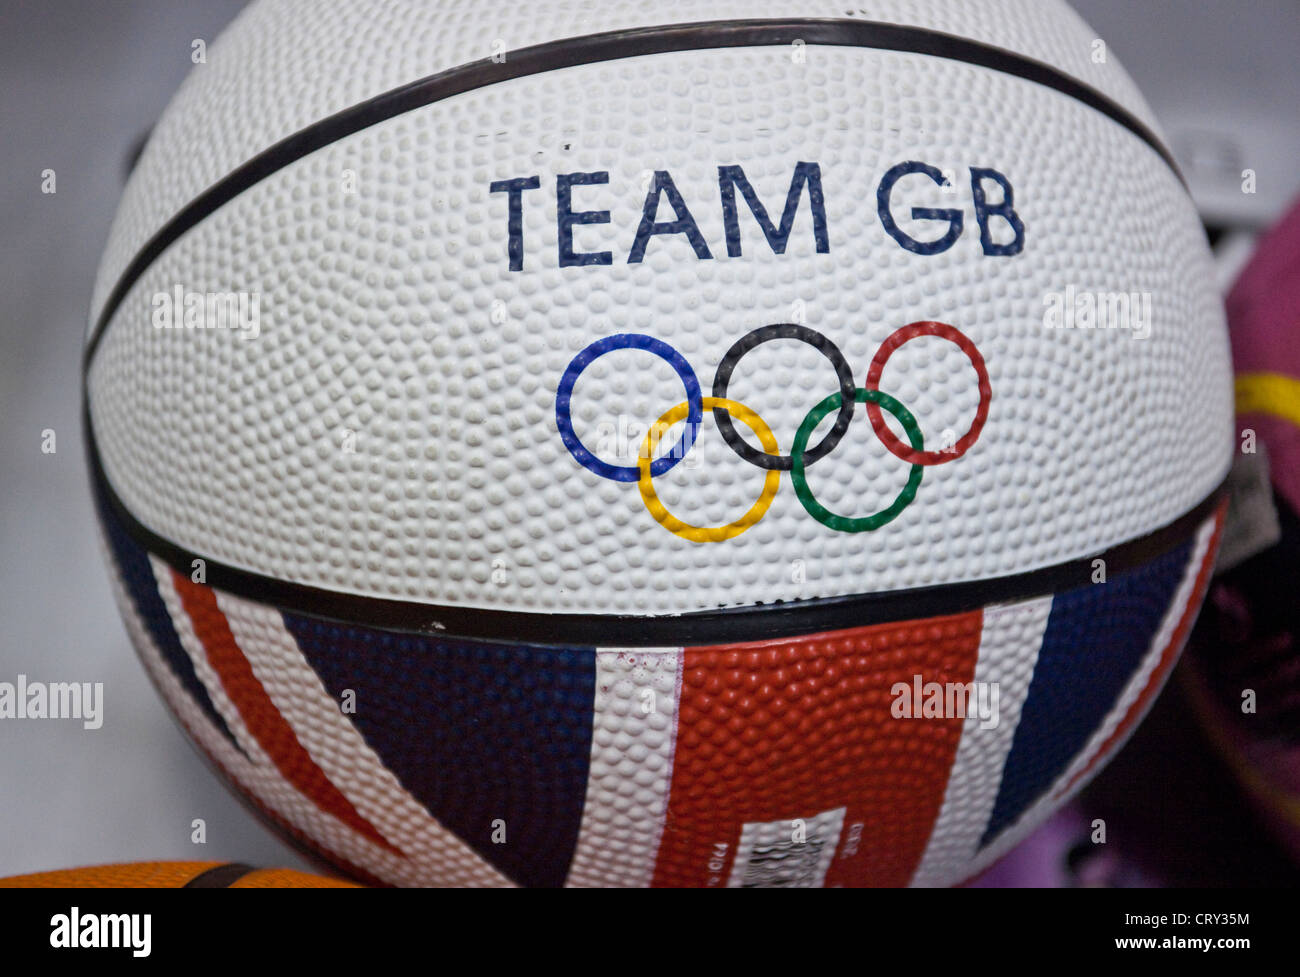 Team GB mit Olympischen Ringen auf einem Basketball, London, England, UK Stockfoto